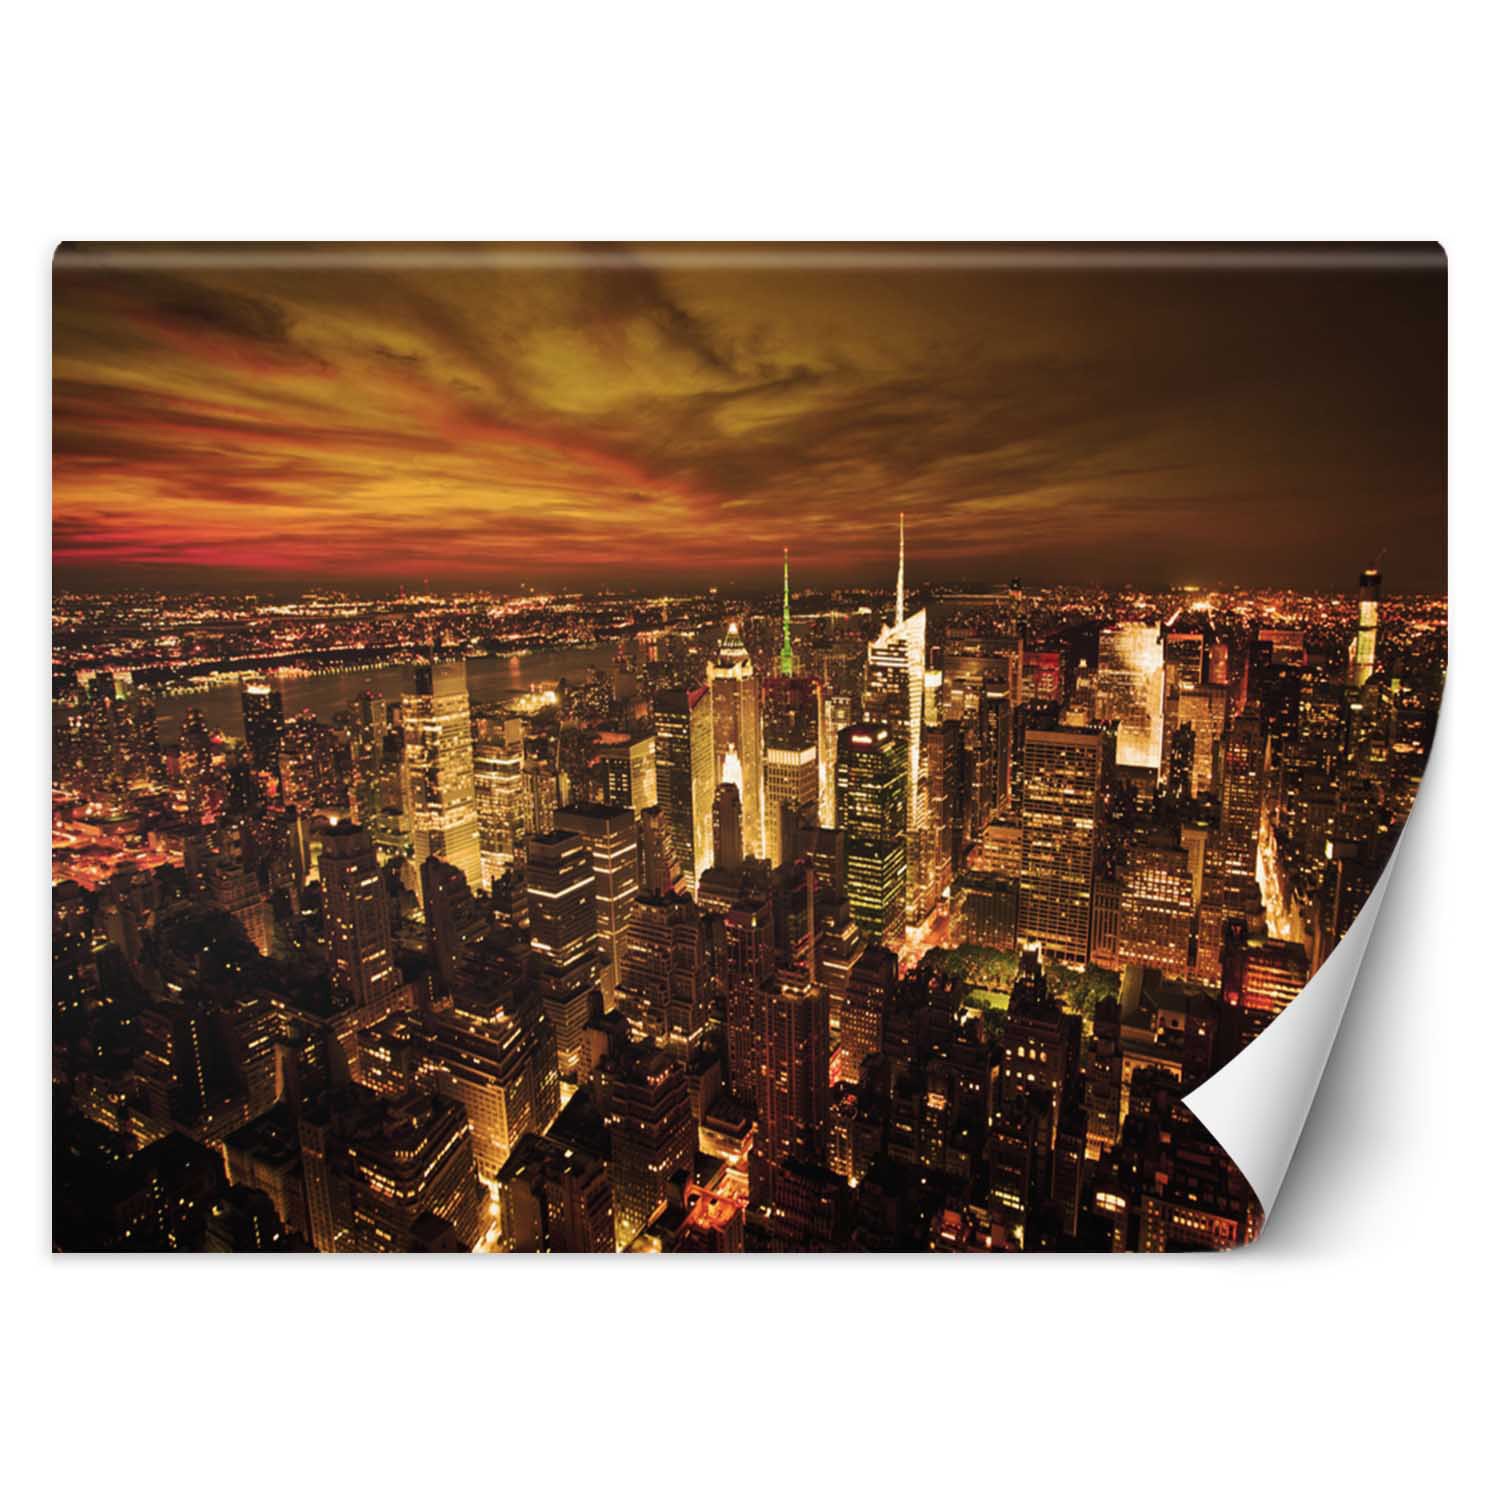 Trend24 – Behang – Midnight Manhattan – Vliesbehang – Fotobehang – Behang Woonkamer – 450x315x2 cm – Incl. behanglijm